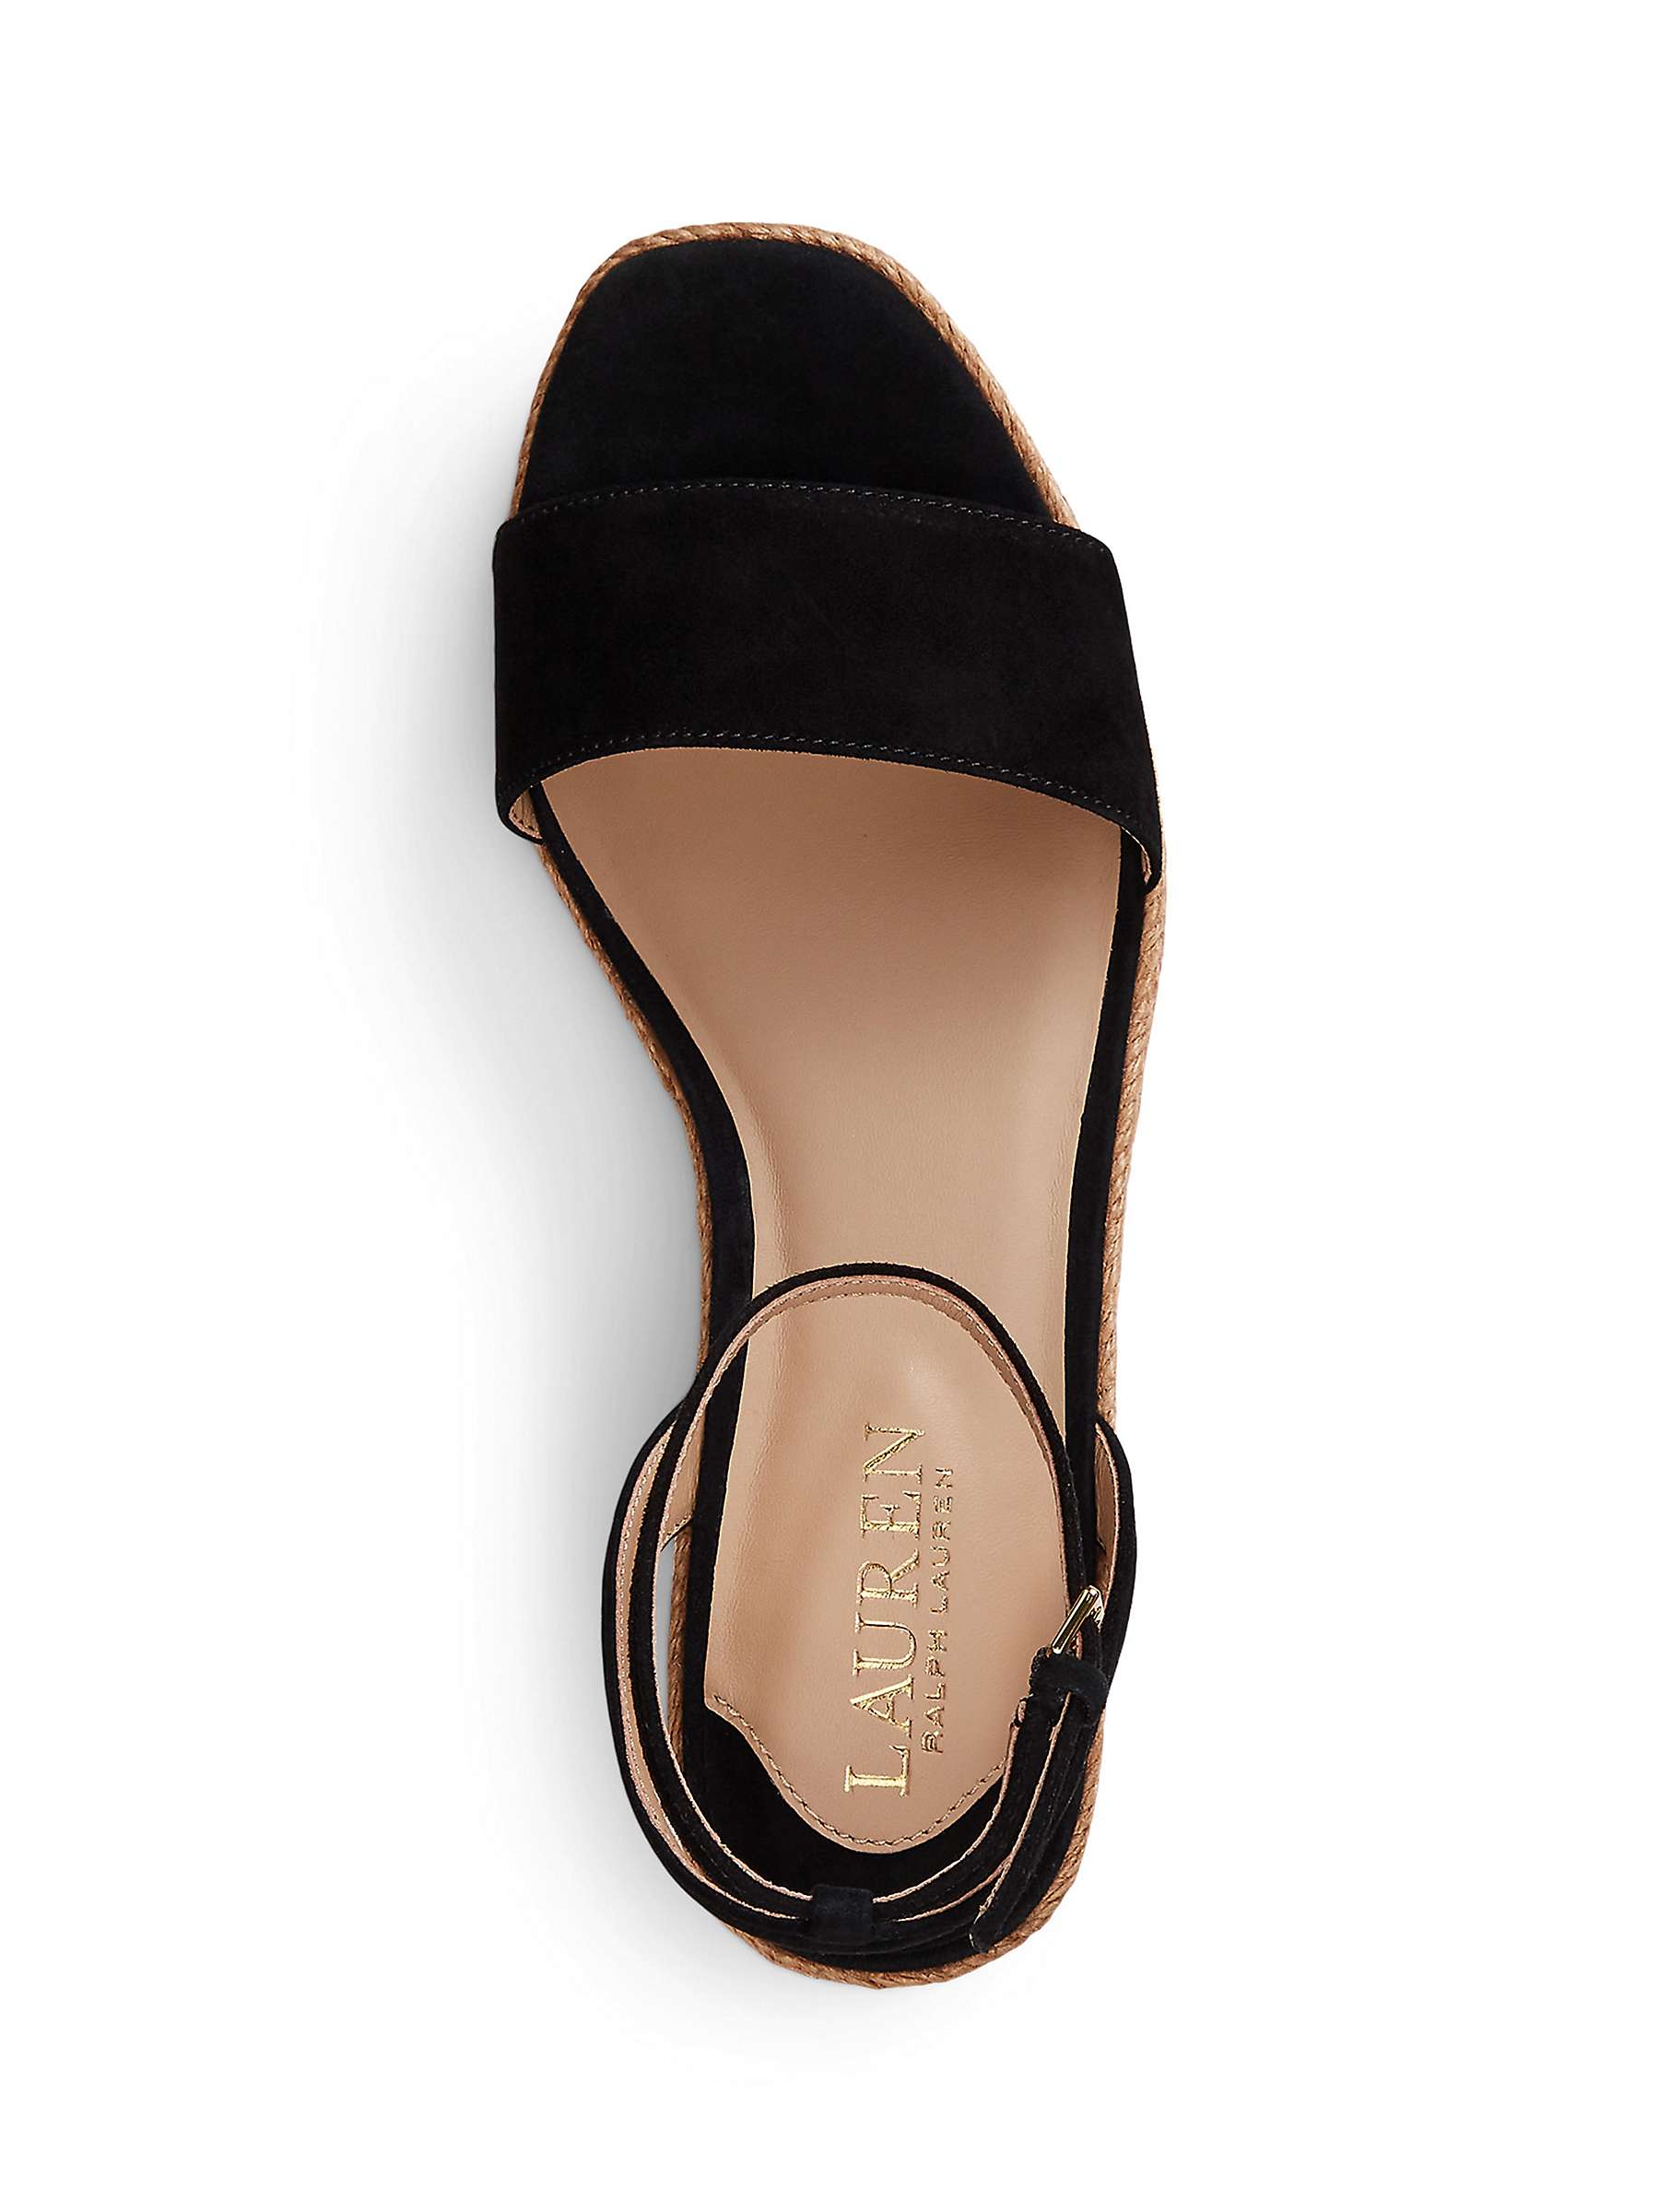 Buy Lauren Ralph Lauren Leona Suede Espadrille Sandals Online at johnlewis.com